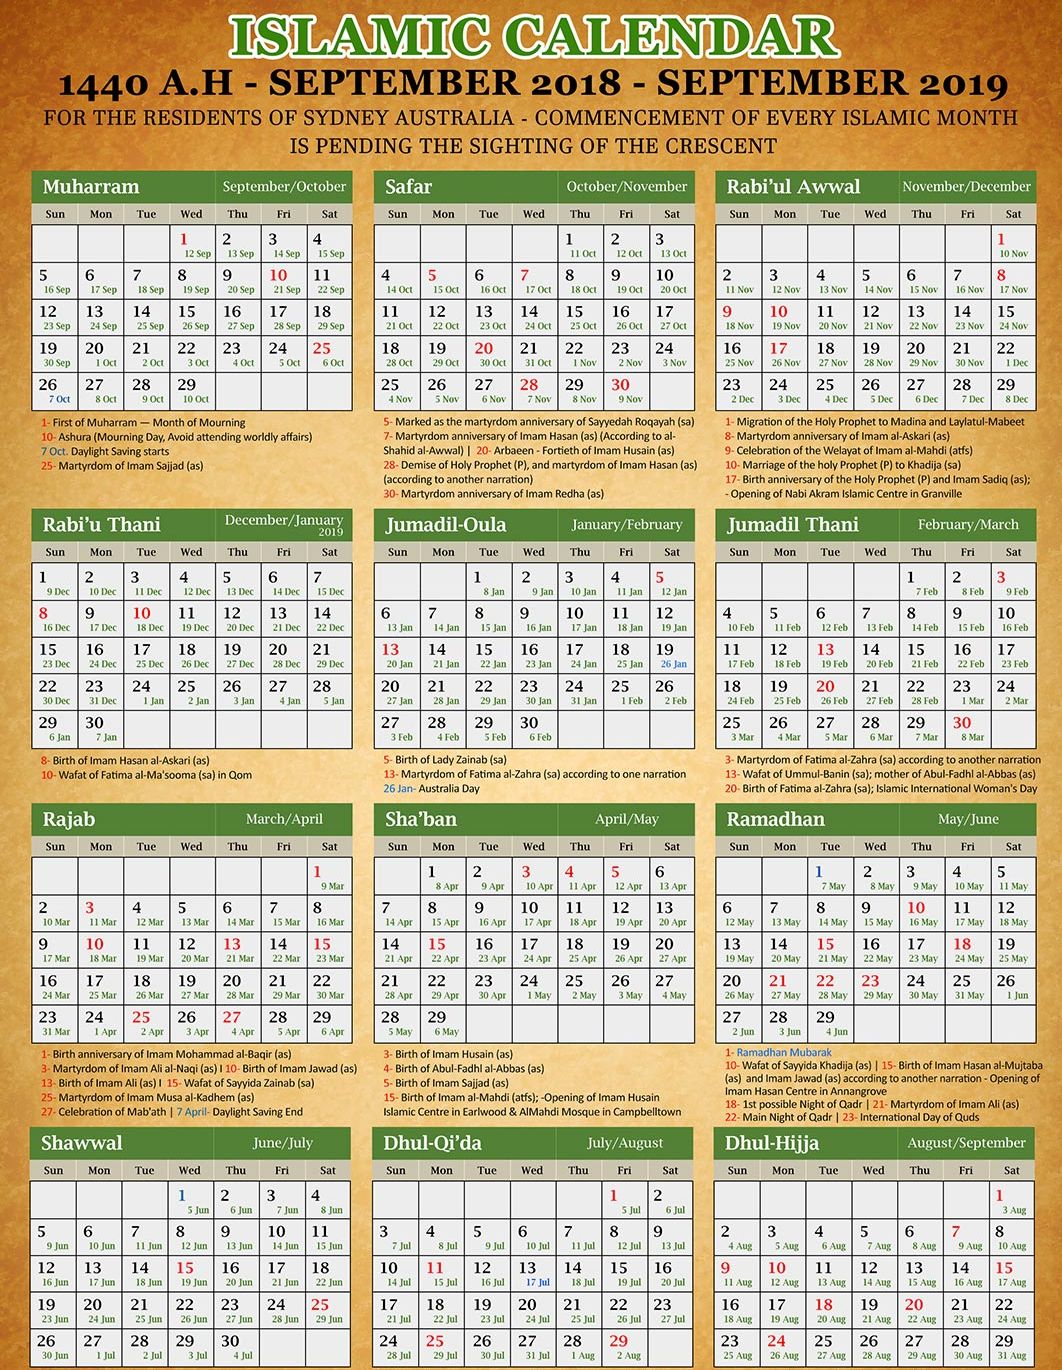 ramadan islamic calendar 2021 pakistan in urdu